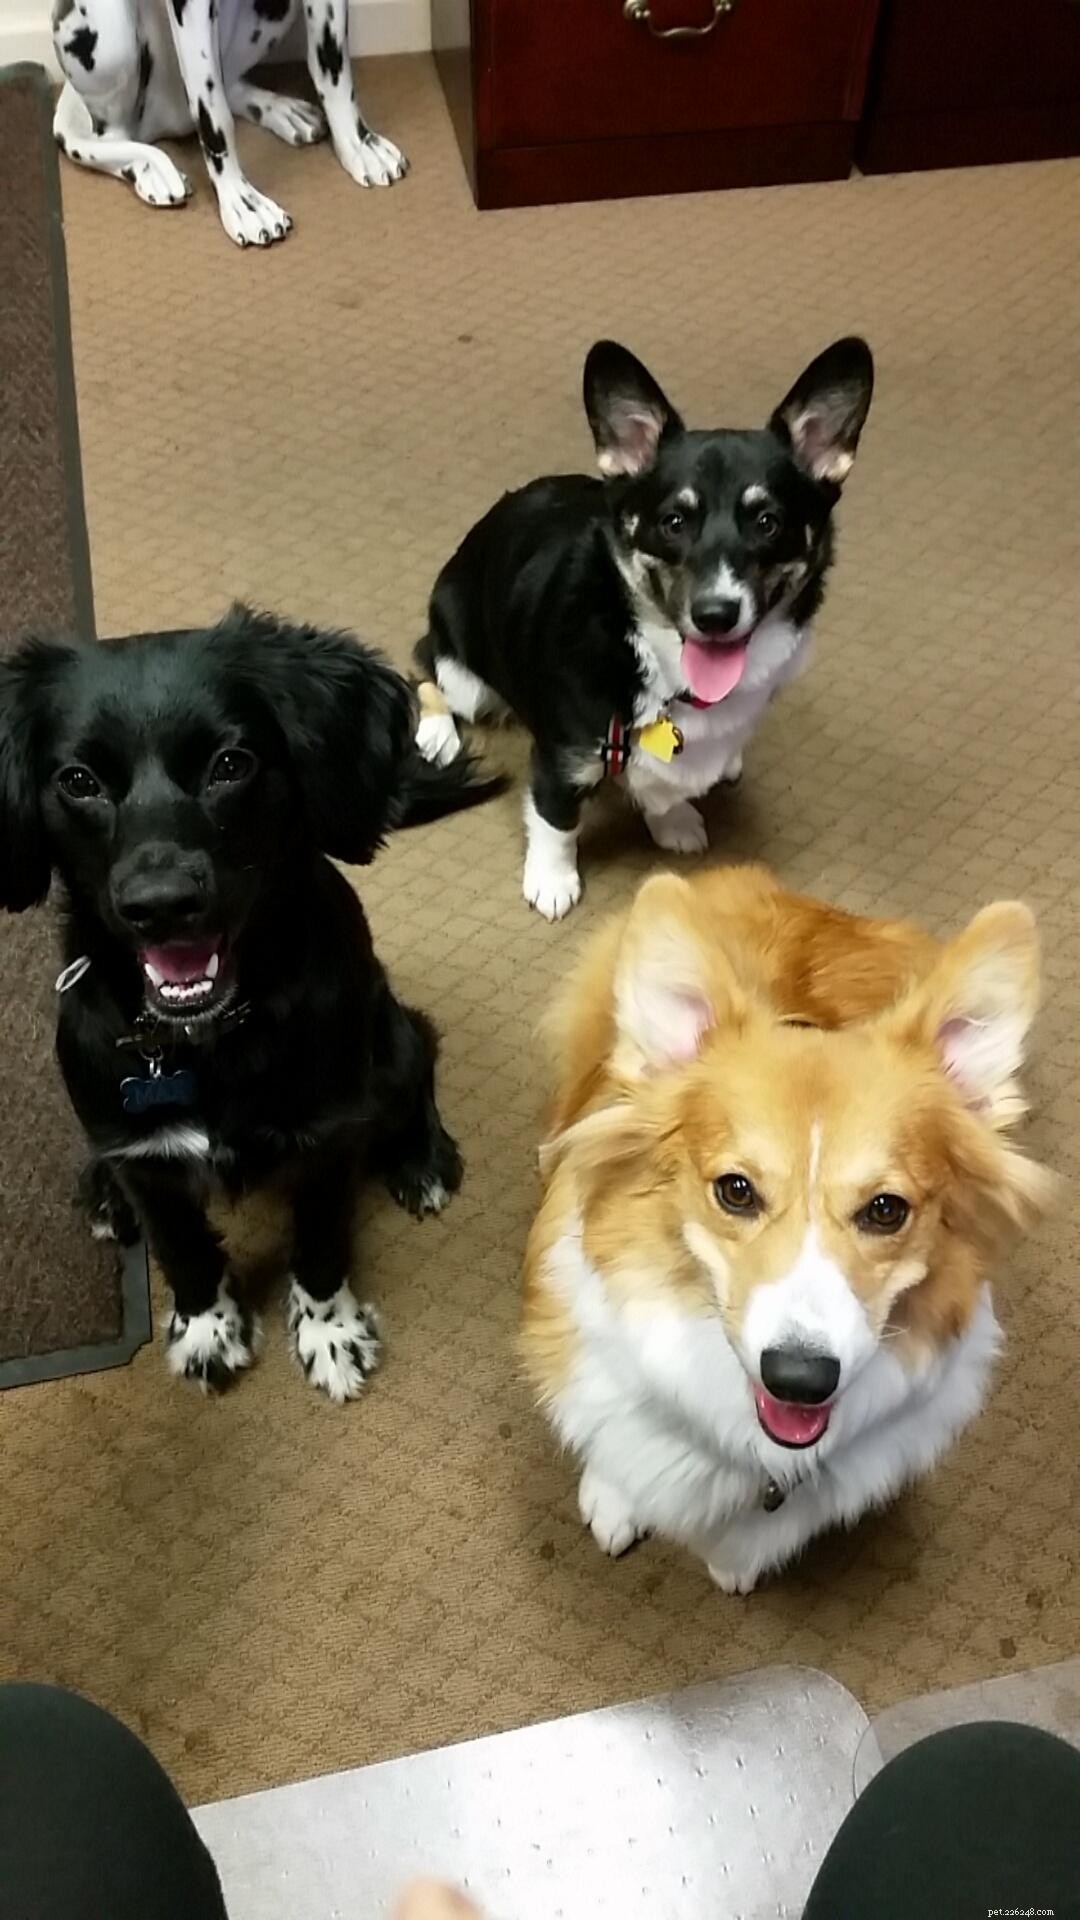 Incontra i nostri nuovi cuccioli di ufficio:Effie, Tonks, Louie e Max!